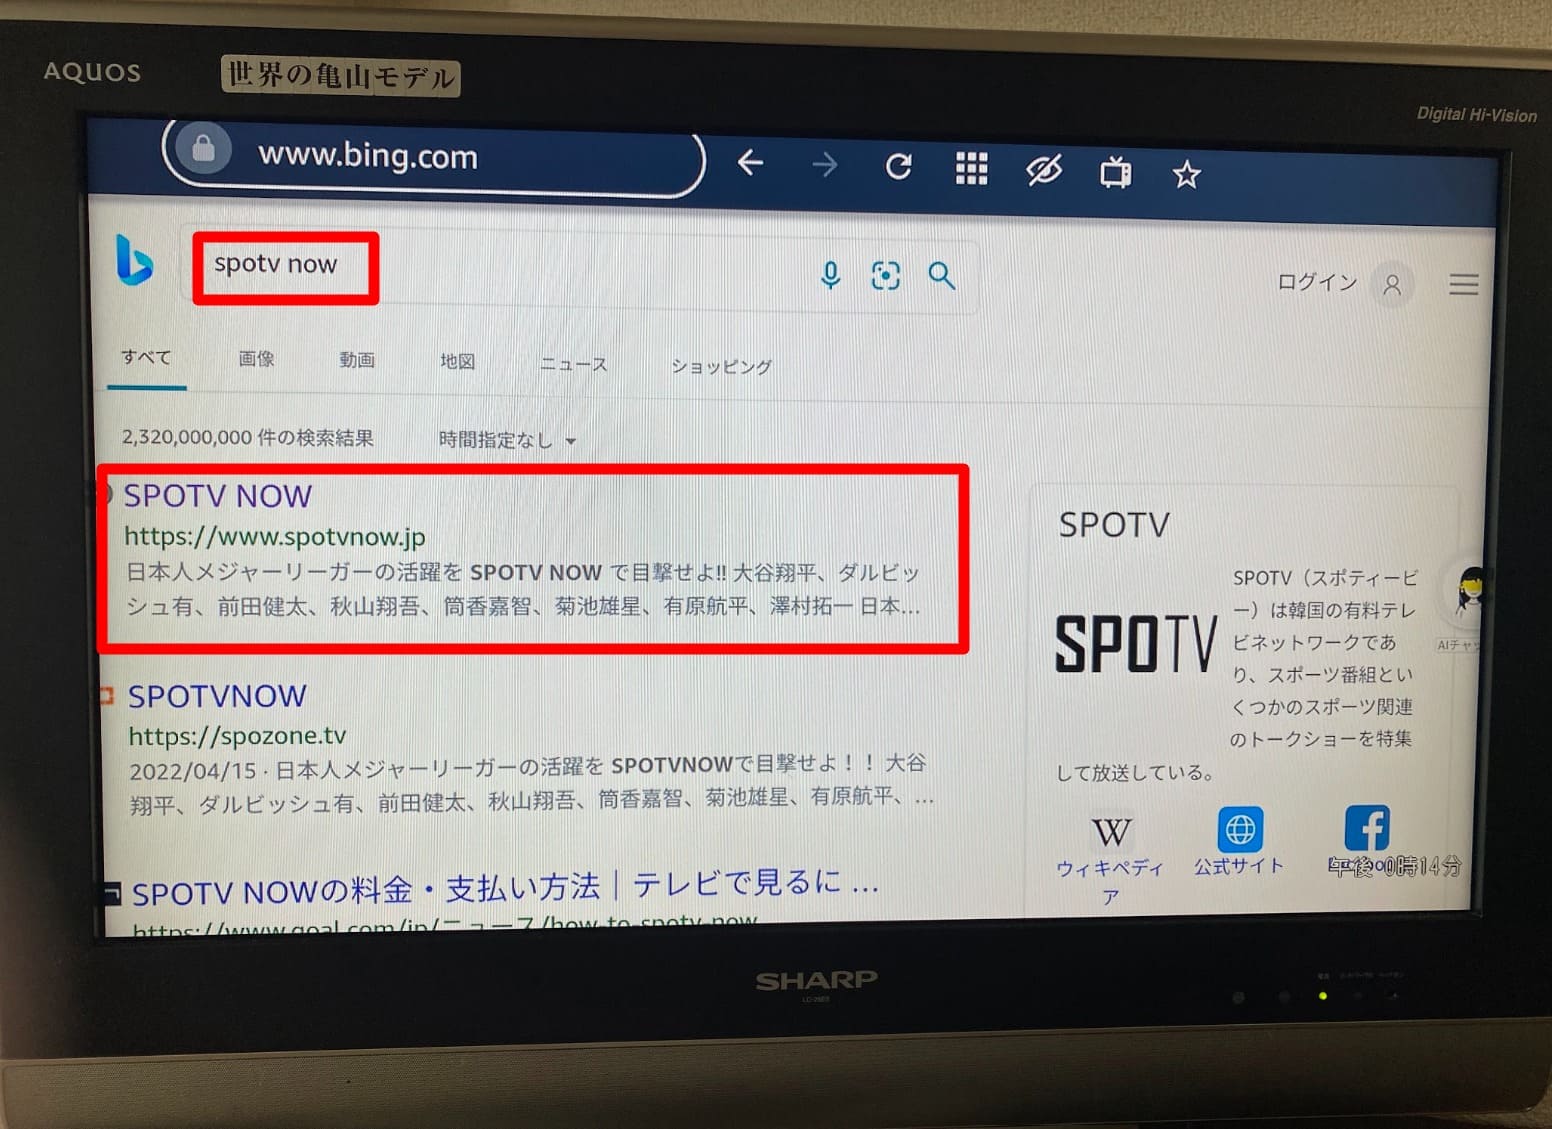 4.SPOTVNOWを検索し、検索結果からサイトをクリックする (1)